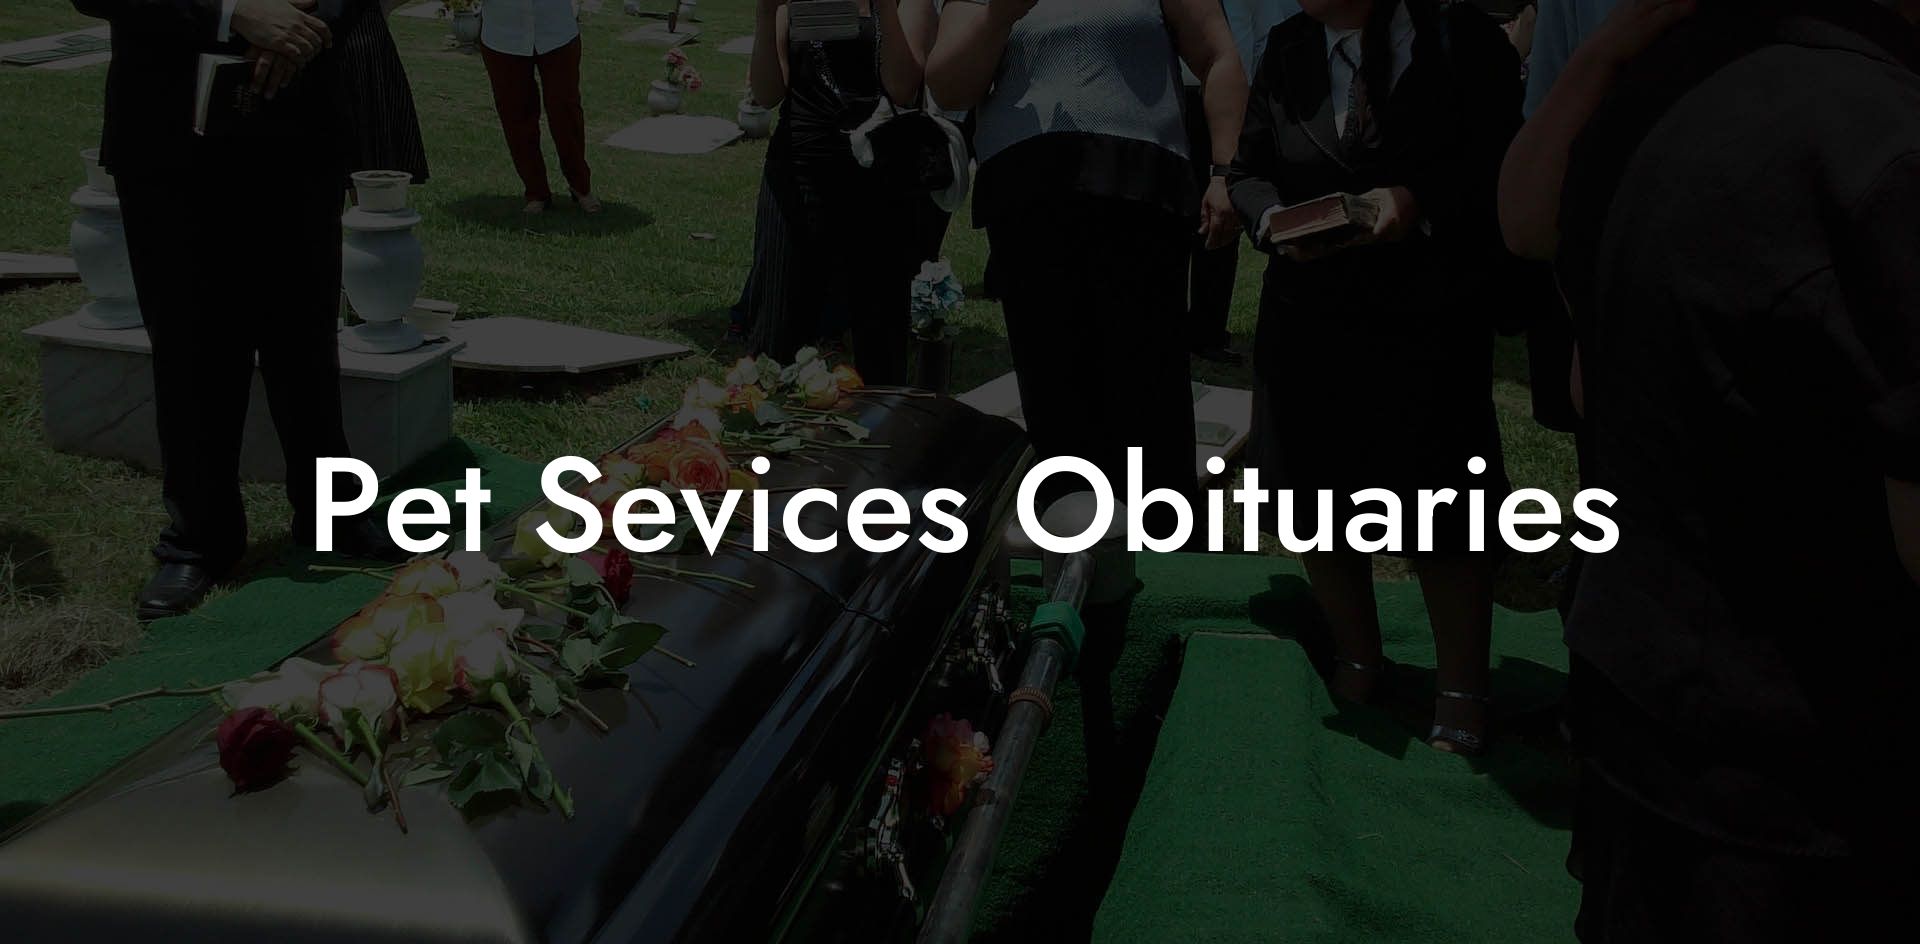 Pet Sevices Obituaries